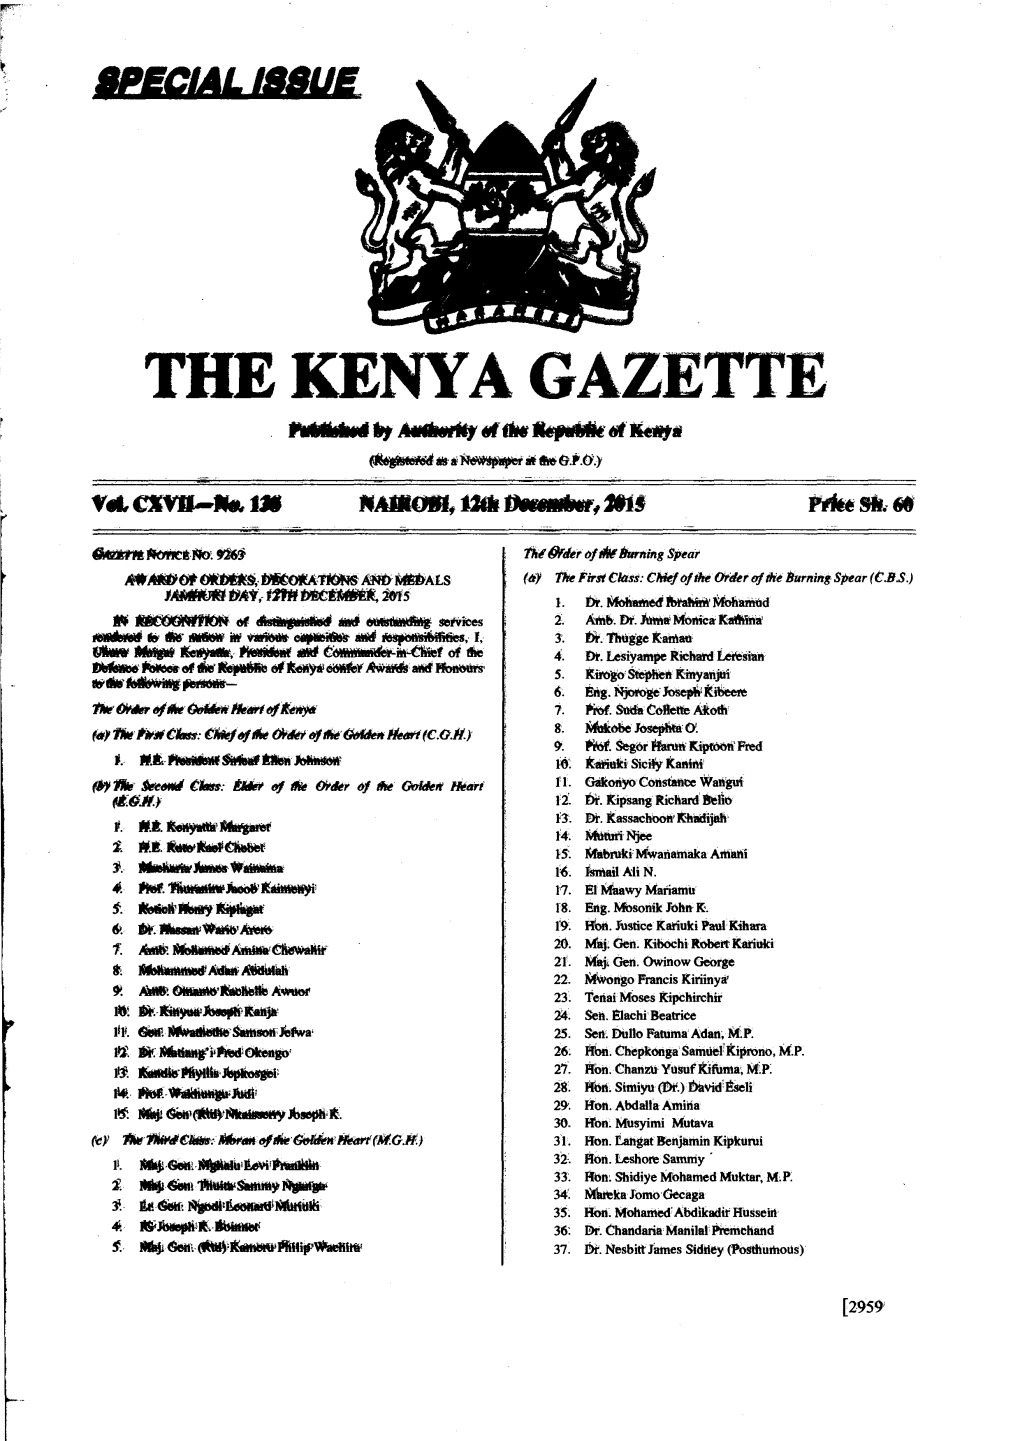 THE KENYA GAZETTE Paibilskat Maar* Elthe &Mae of Kato **Few *Np E 01.1*.O.Y